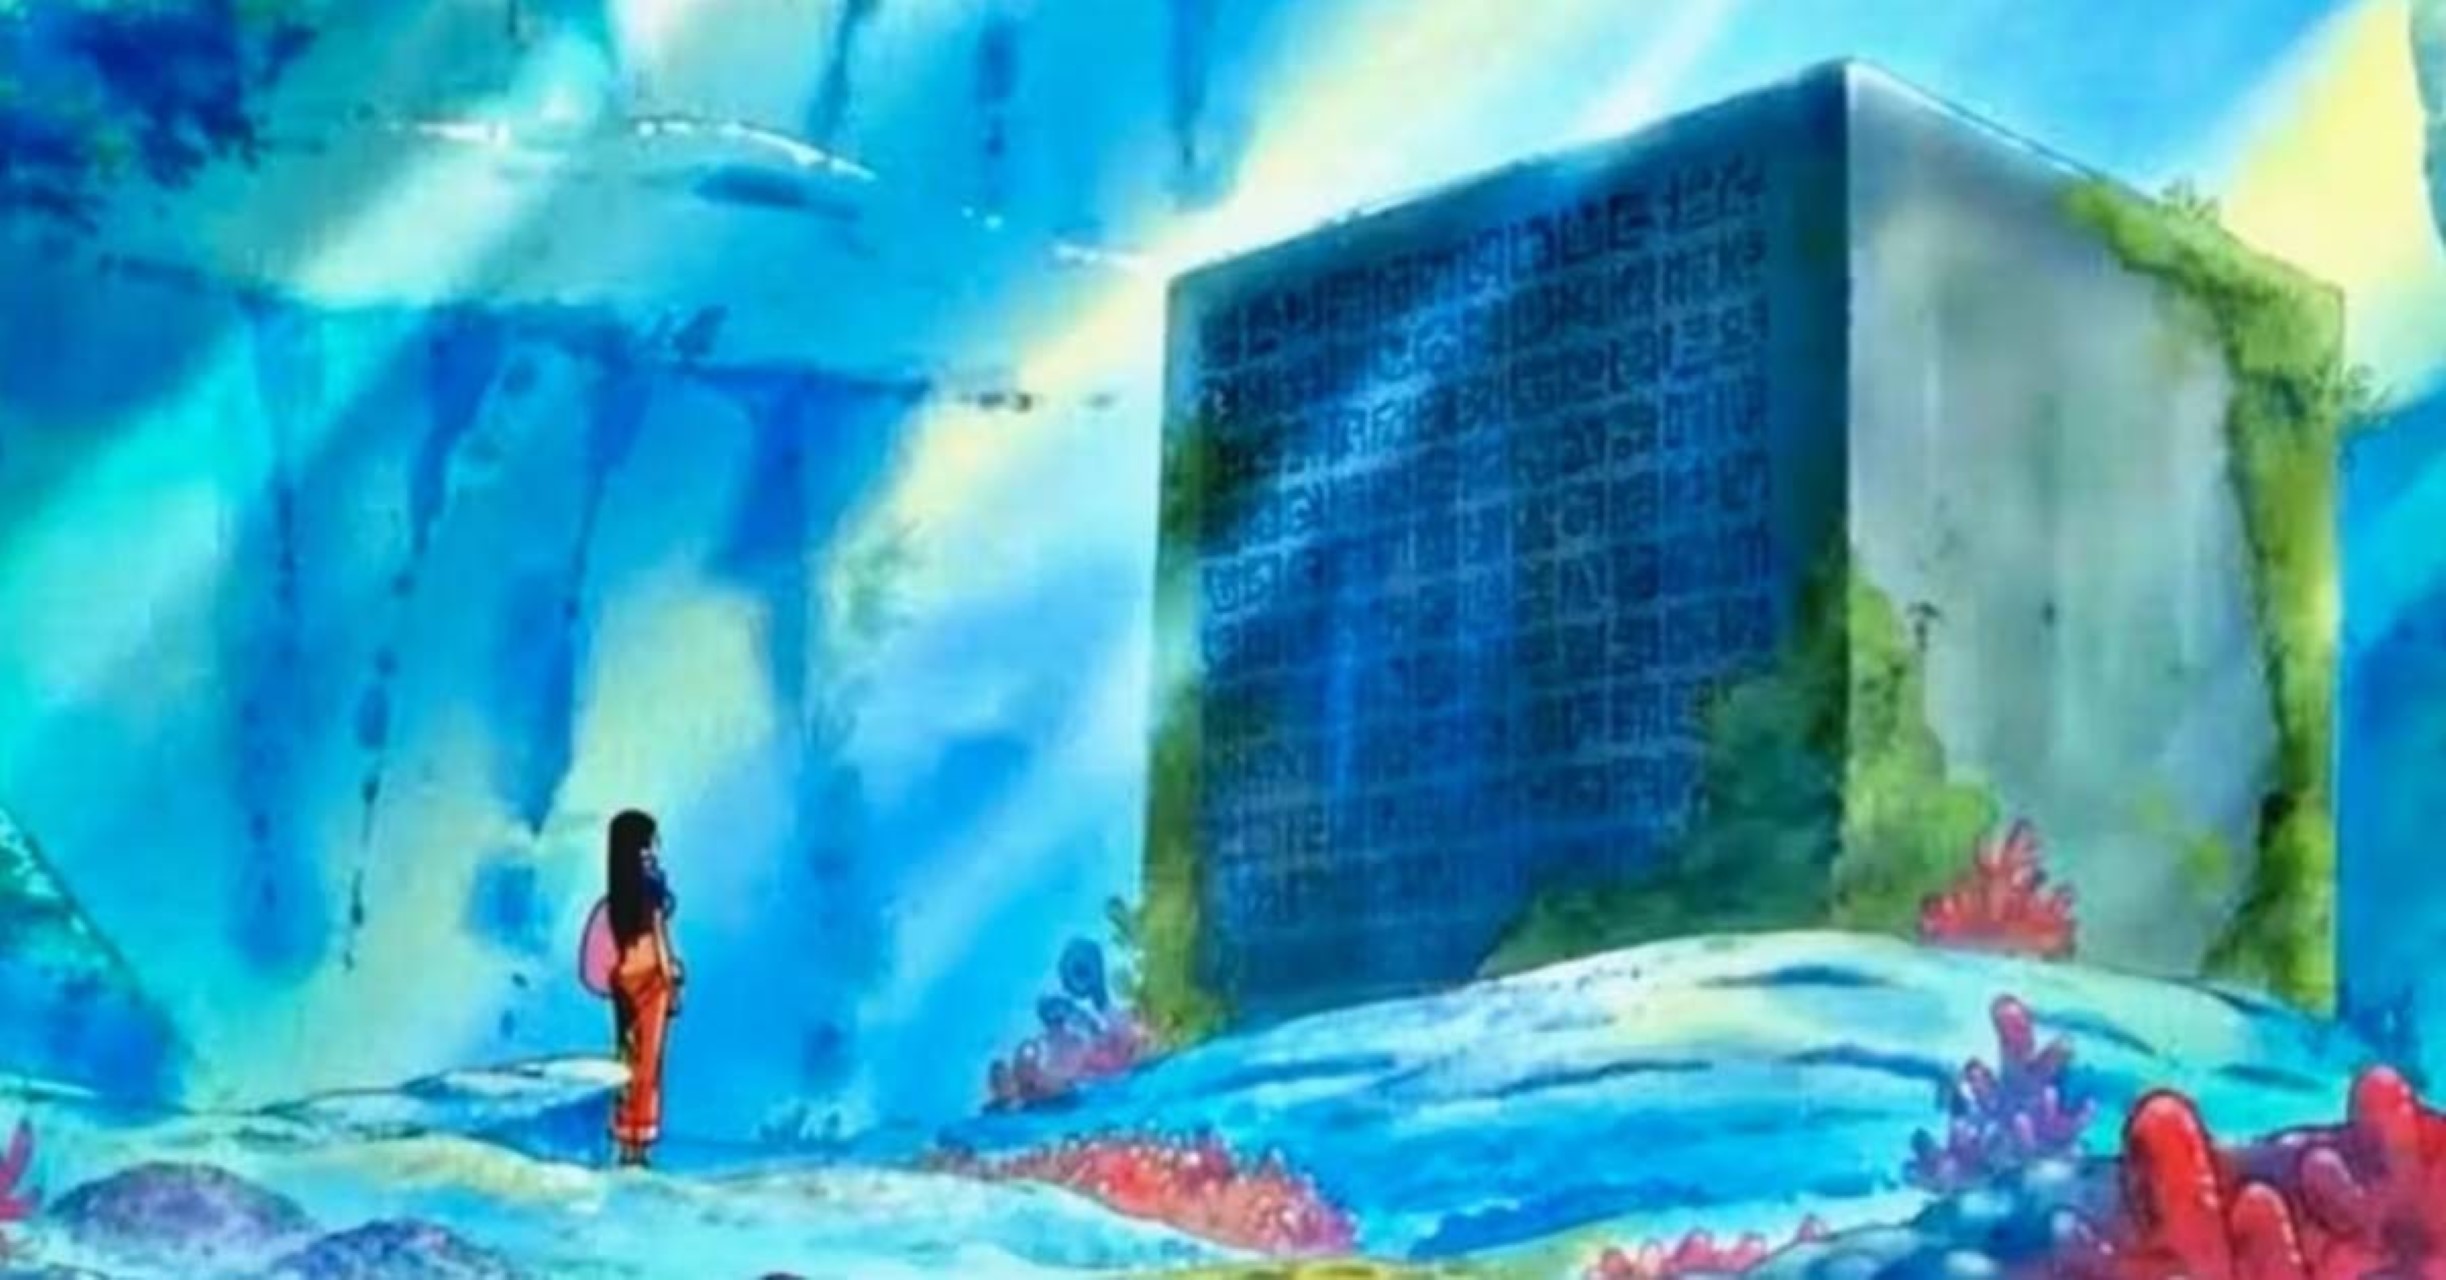 Criador de One Piece deu um grande spoiler da Saga Final 25 anos atrás